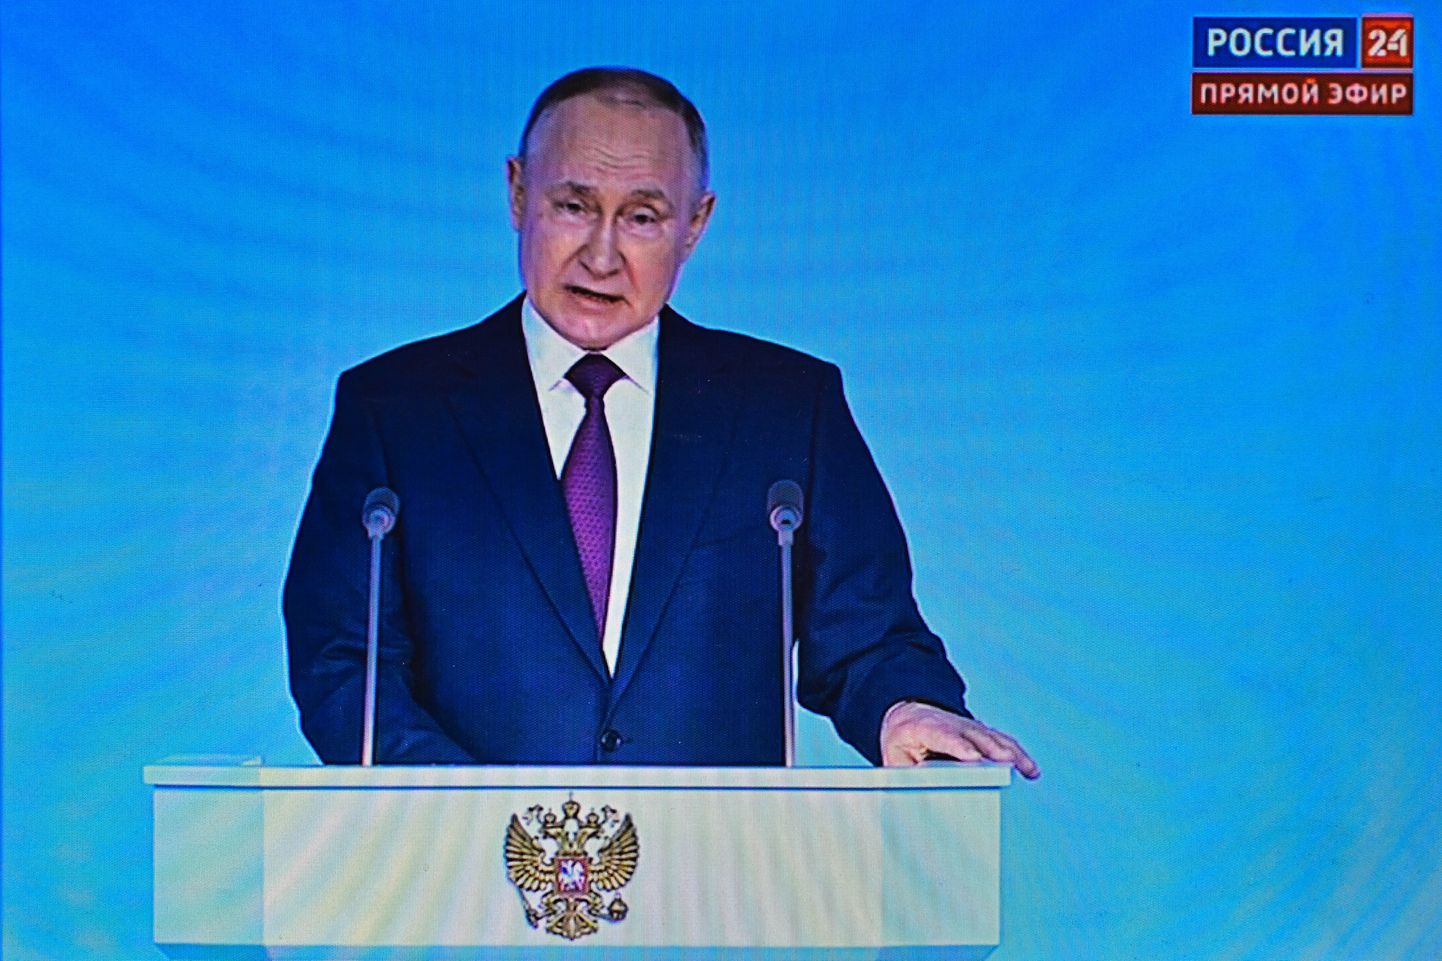 Pilt Putini veebruarikuu aastakõnest kanalil Rossija 24